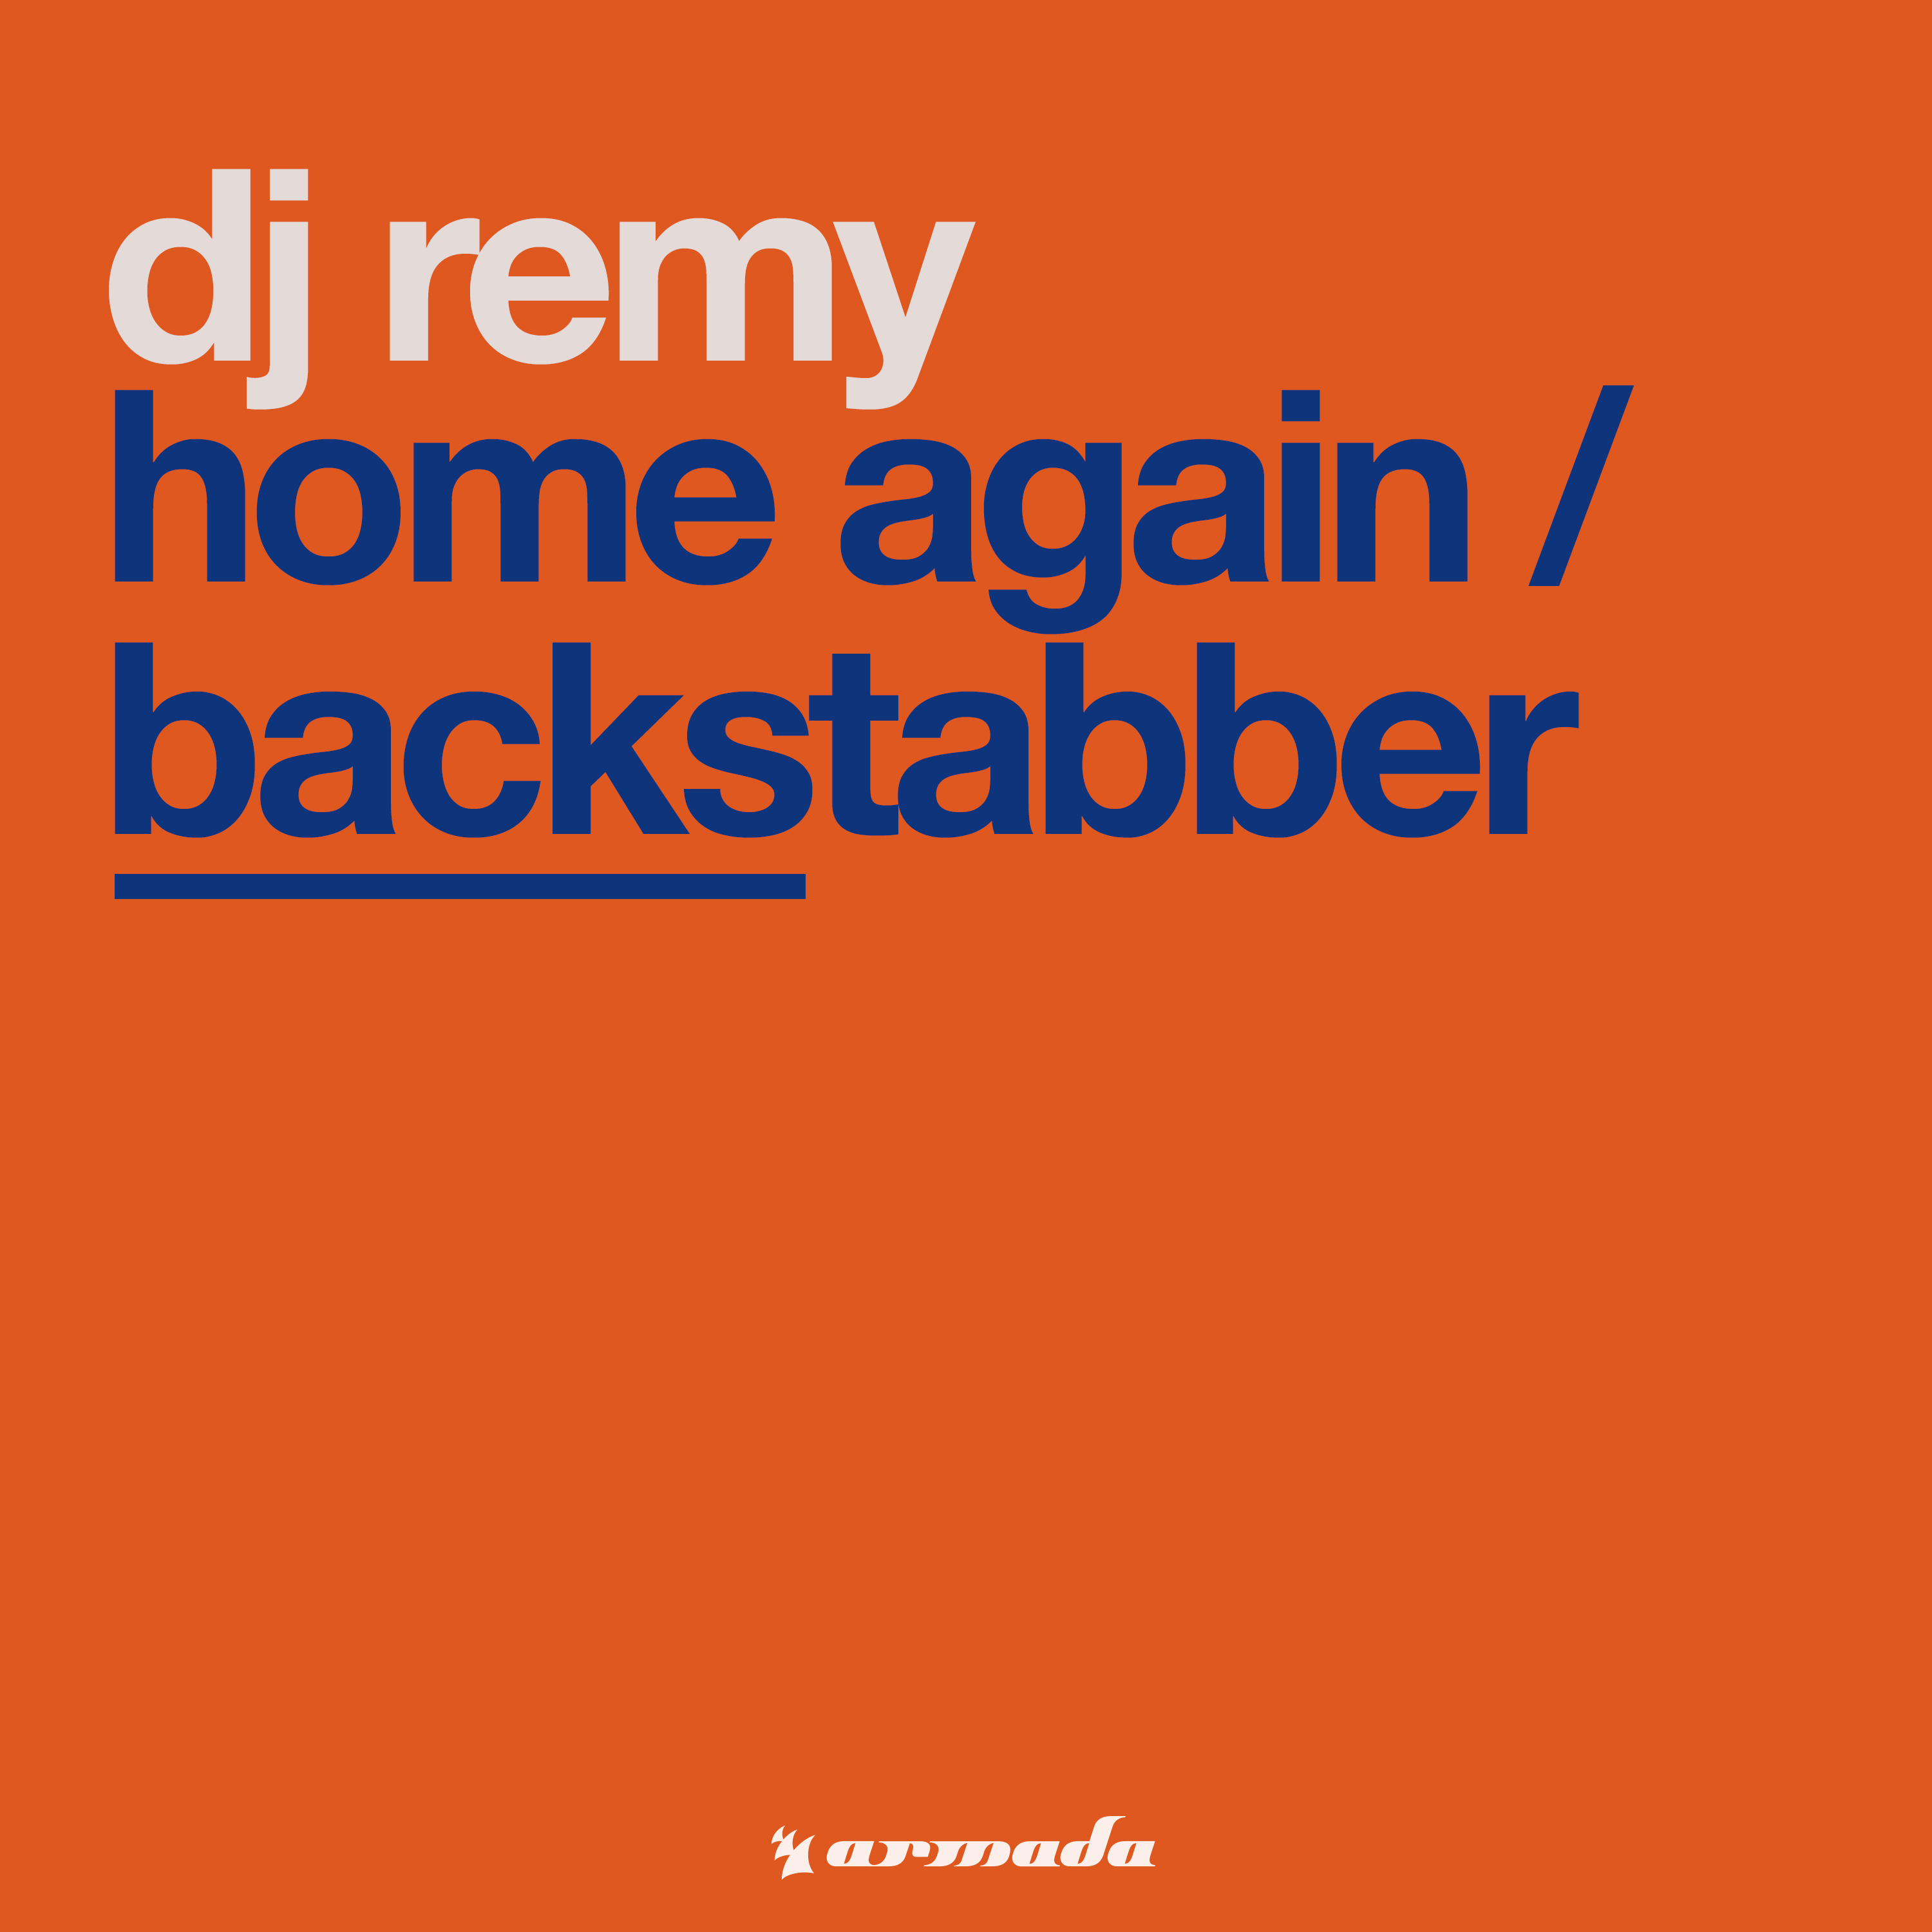 Home Again / Backstabber